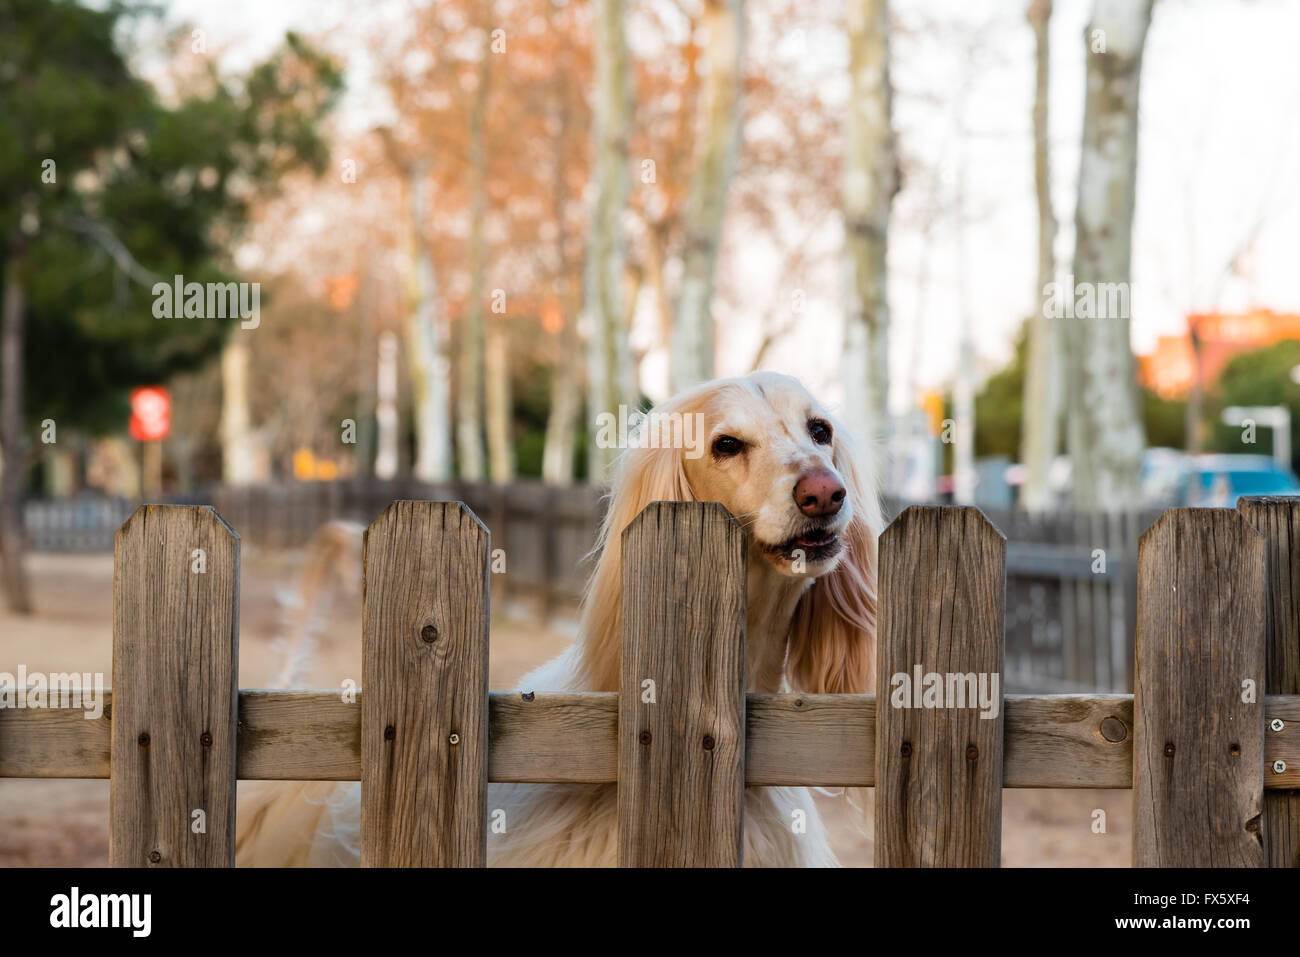 faithful blonde dog awaiting its owners return Stock Photo